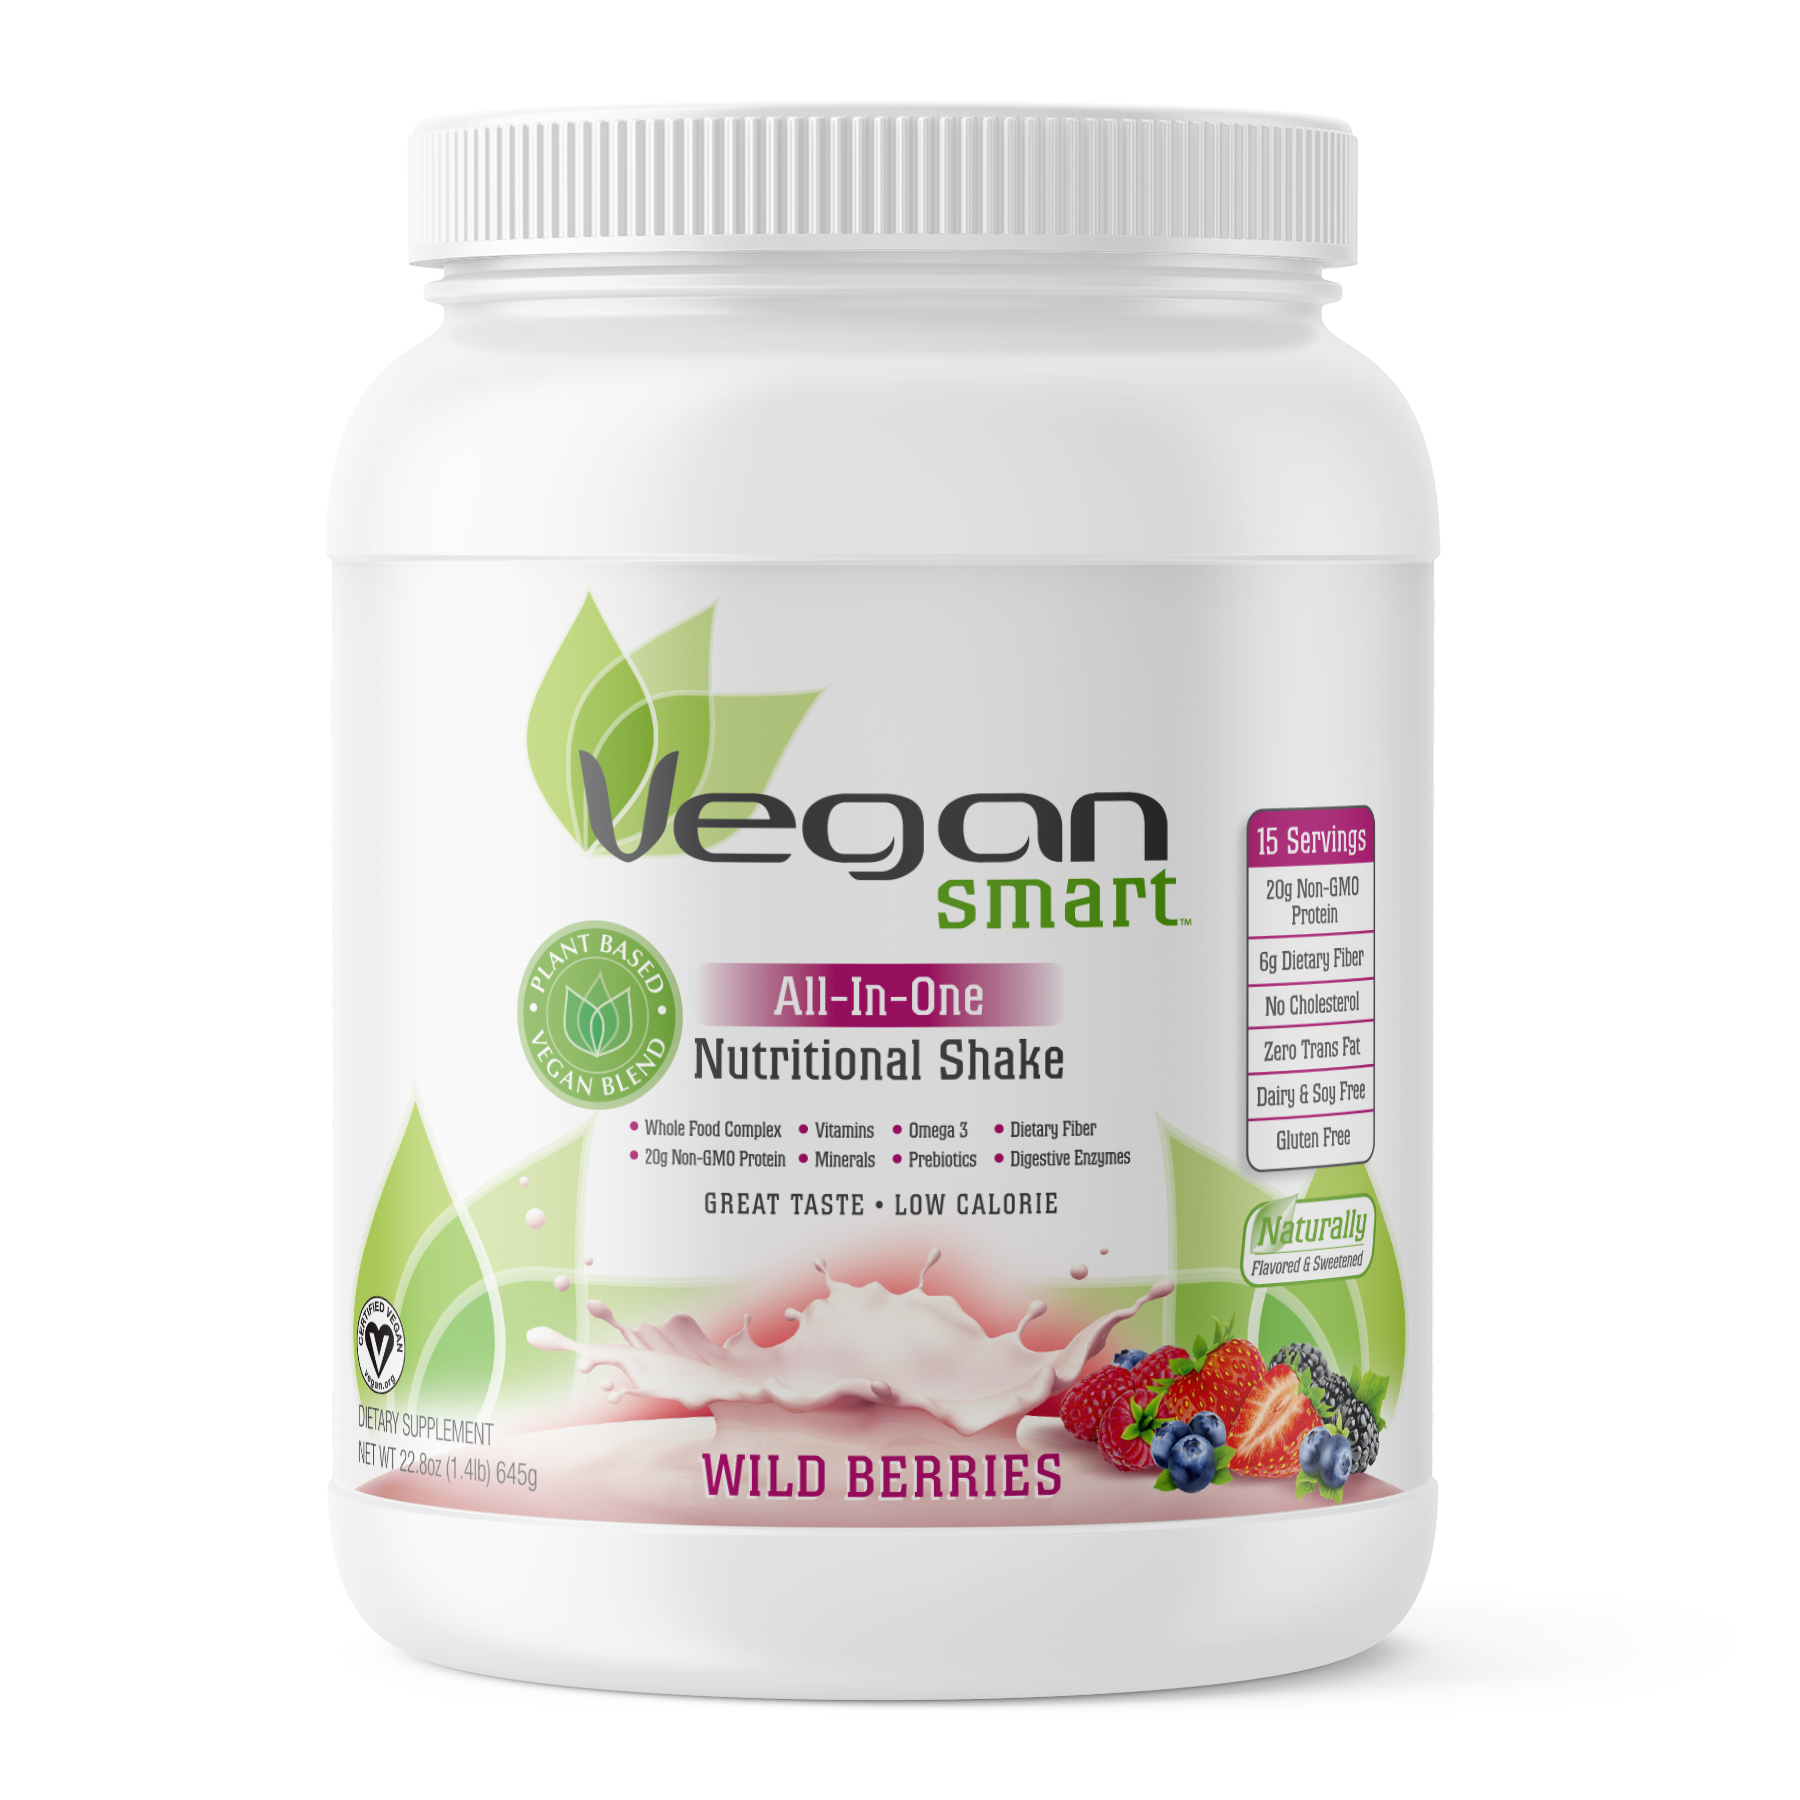 VeganSmart protein powder